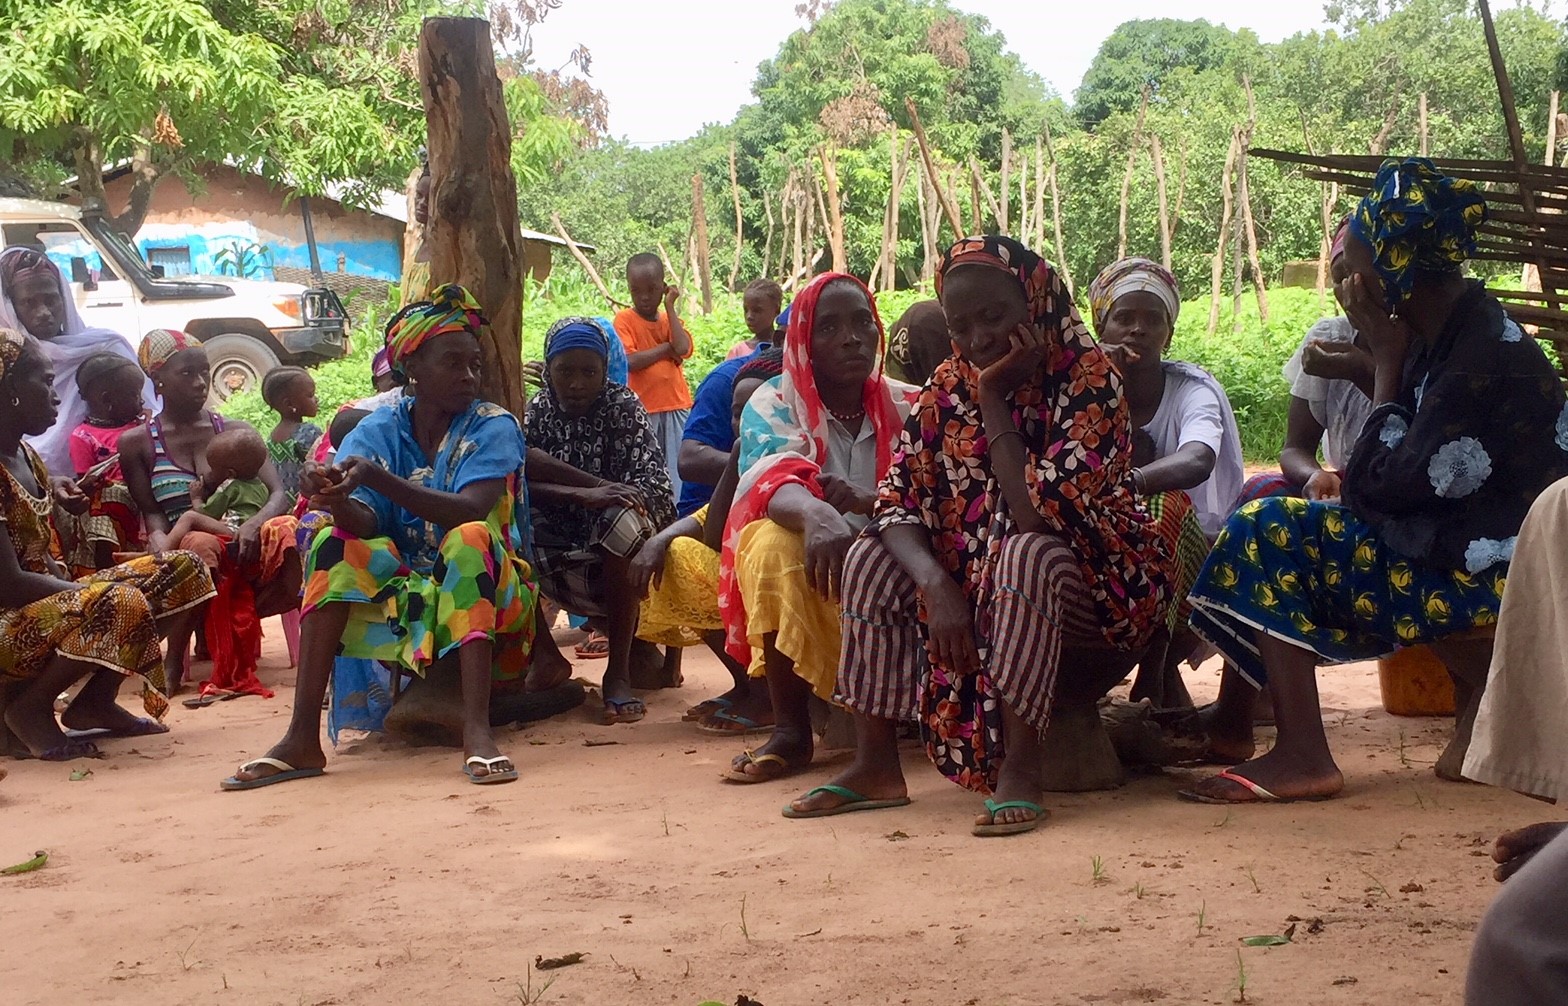 riunione rifugiati senegalesi_guinea bissau_mani tese_2018